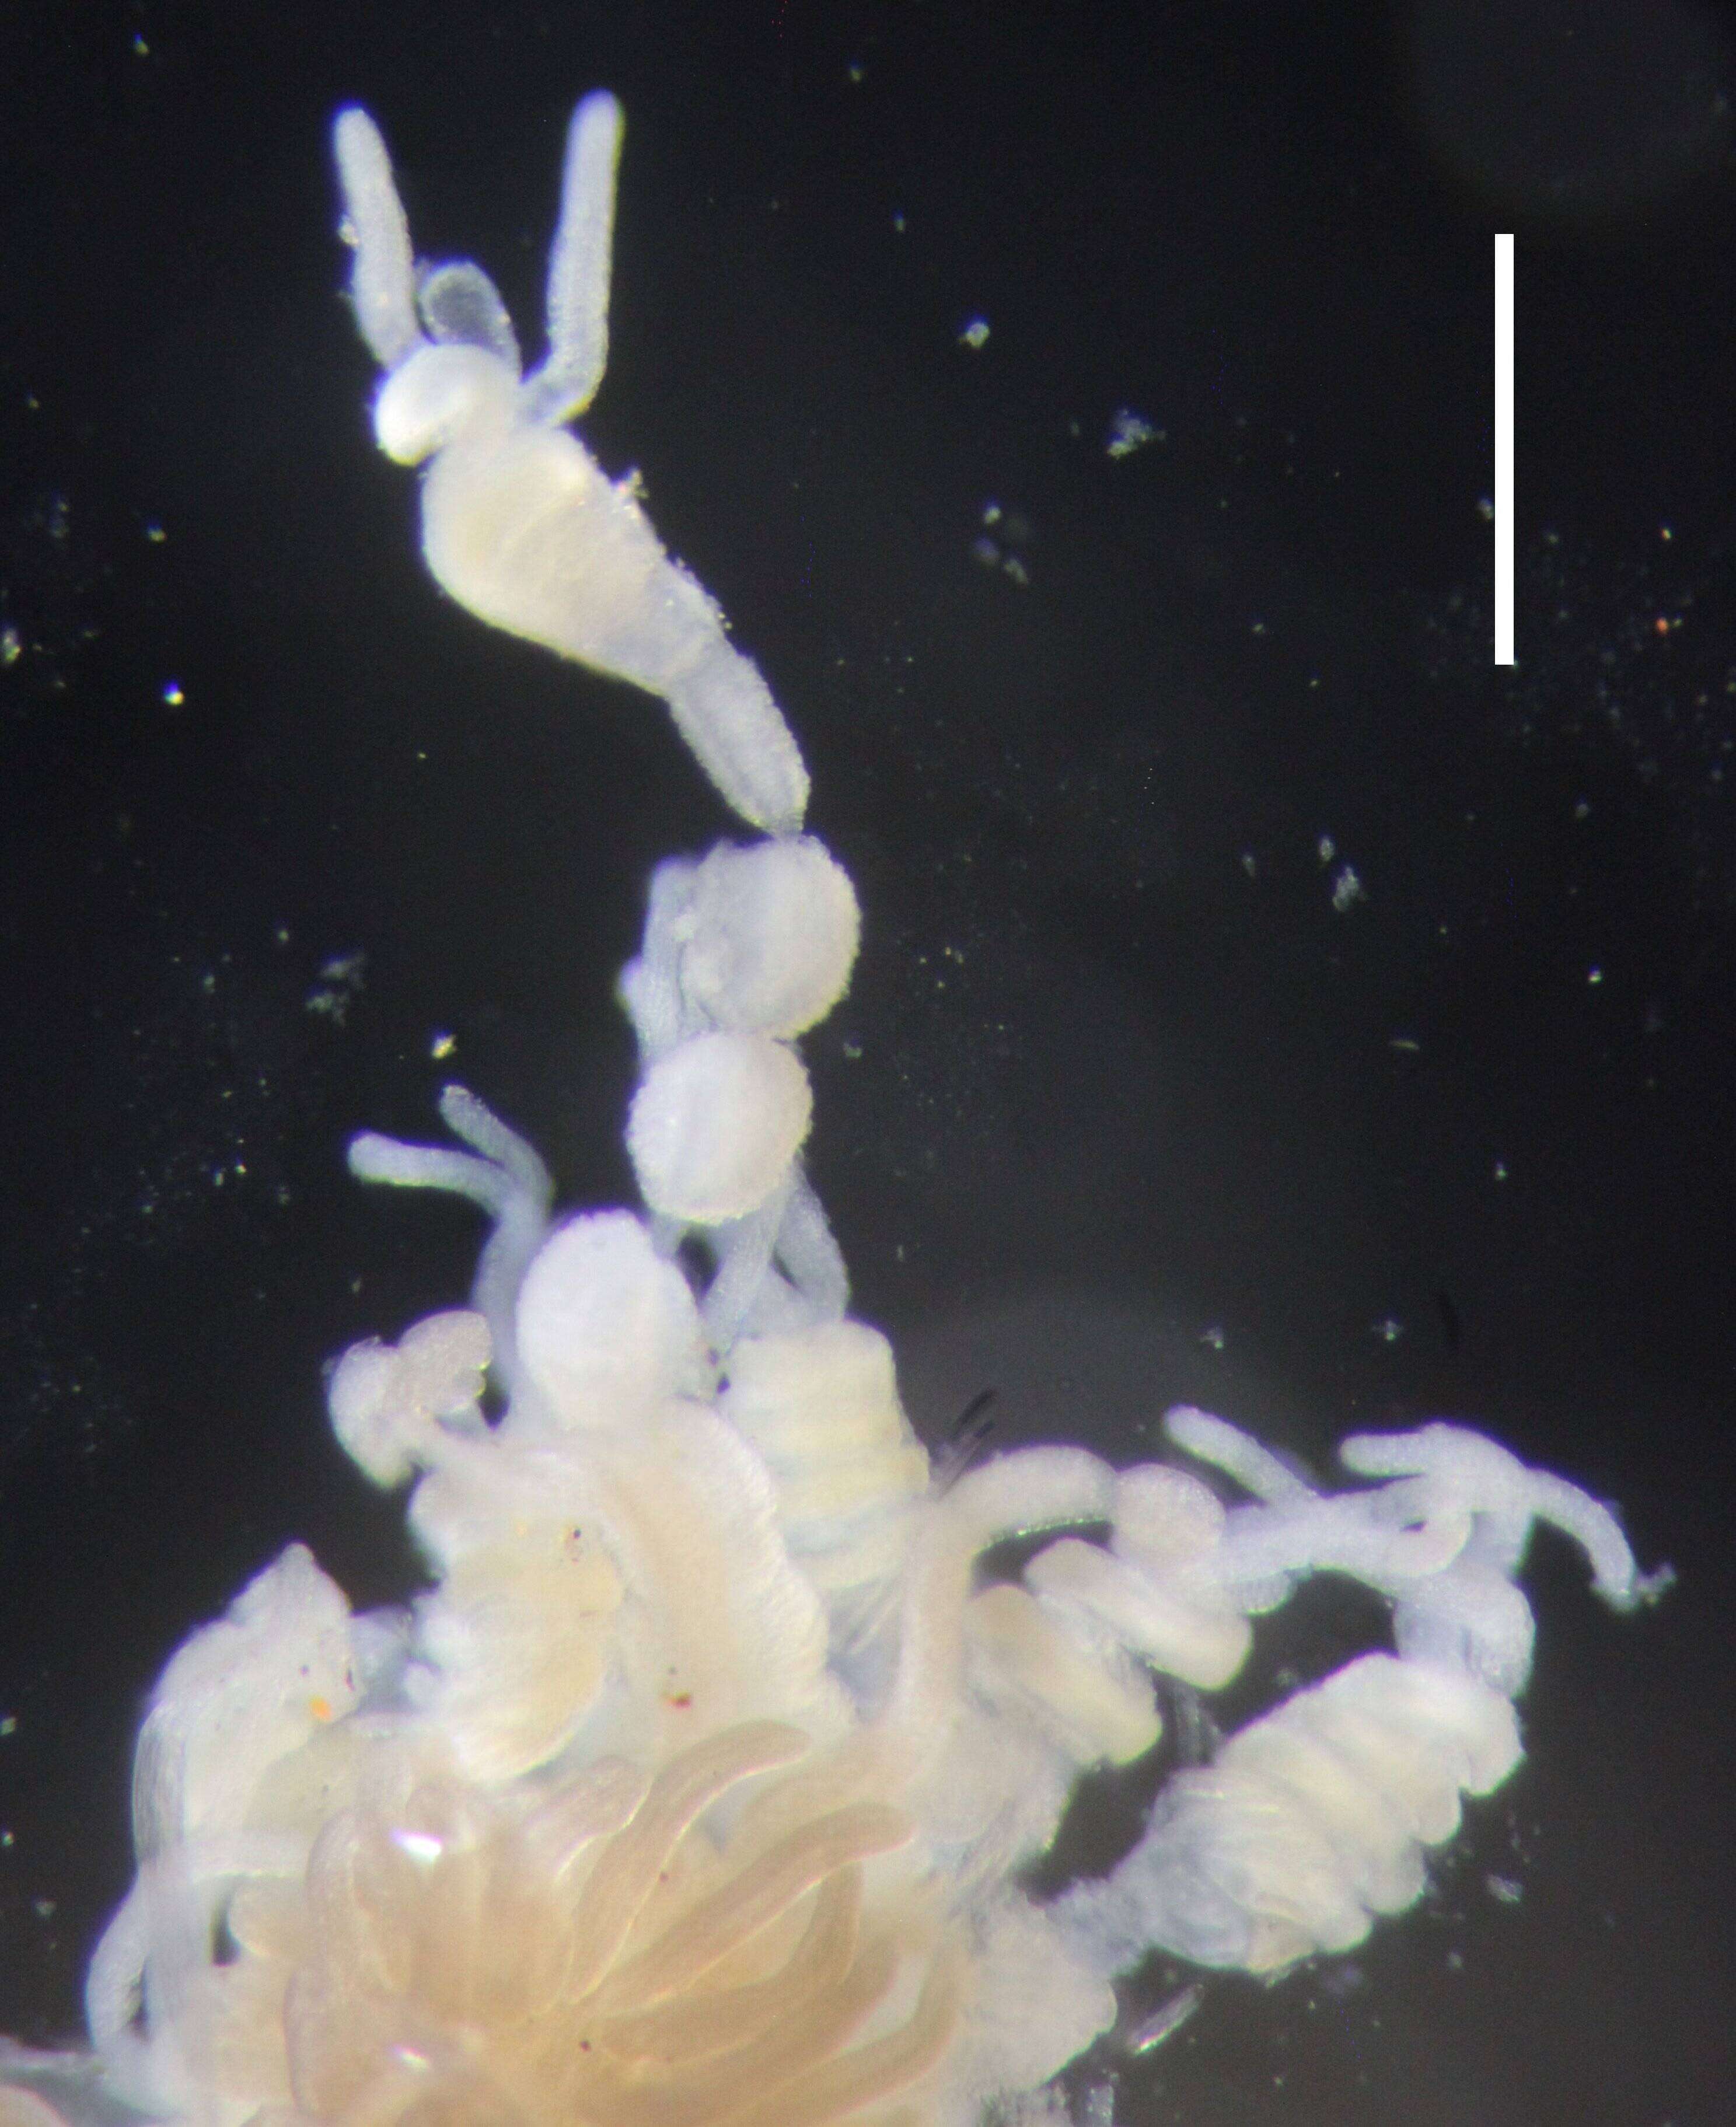 Image of Agalma elegans (Sars 1846)